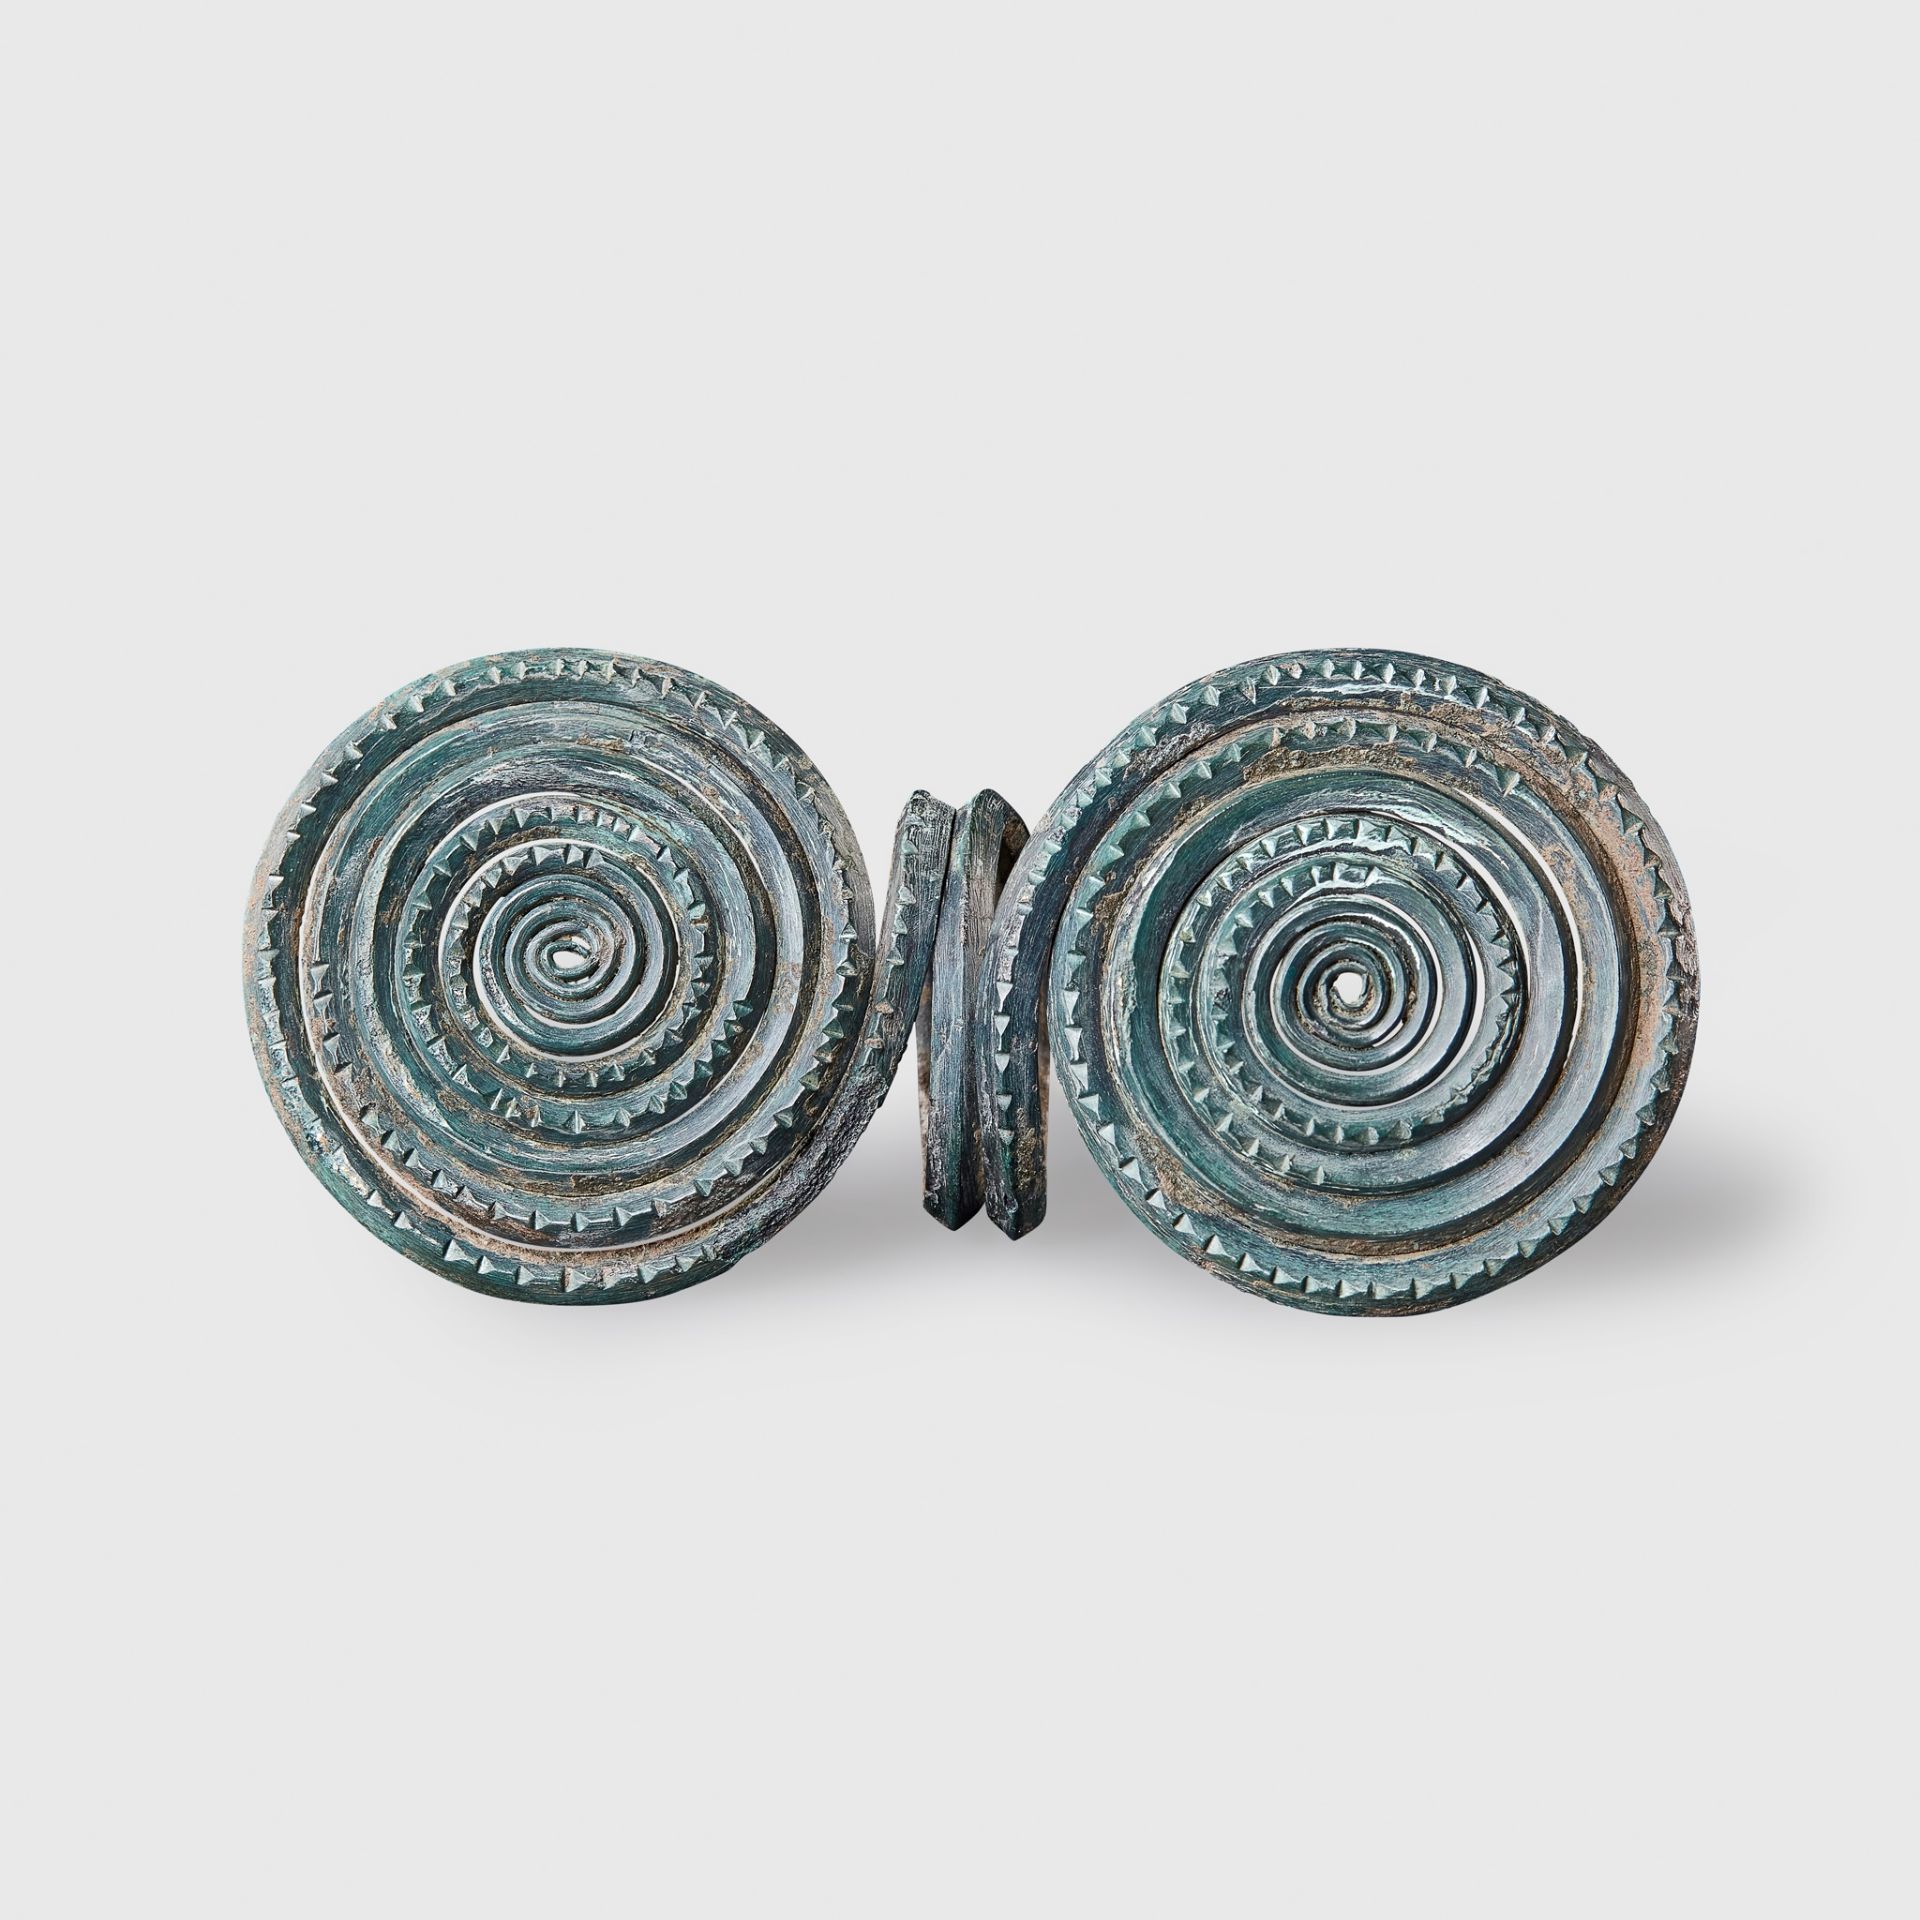 BRONZE AGE SPIRAL RING EUROPE, 1500 - 1200 B.C.